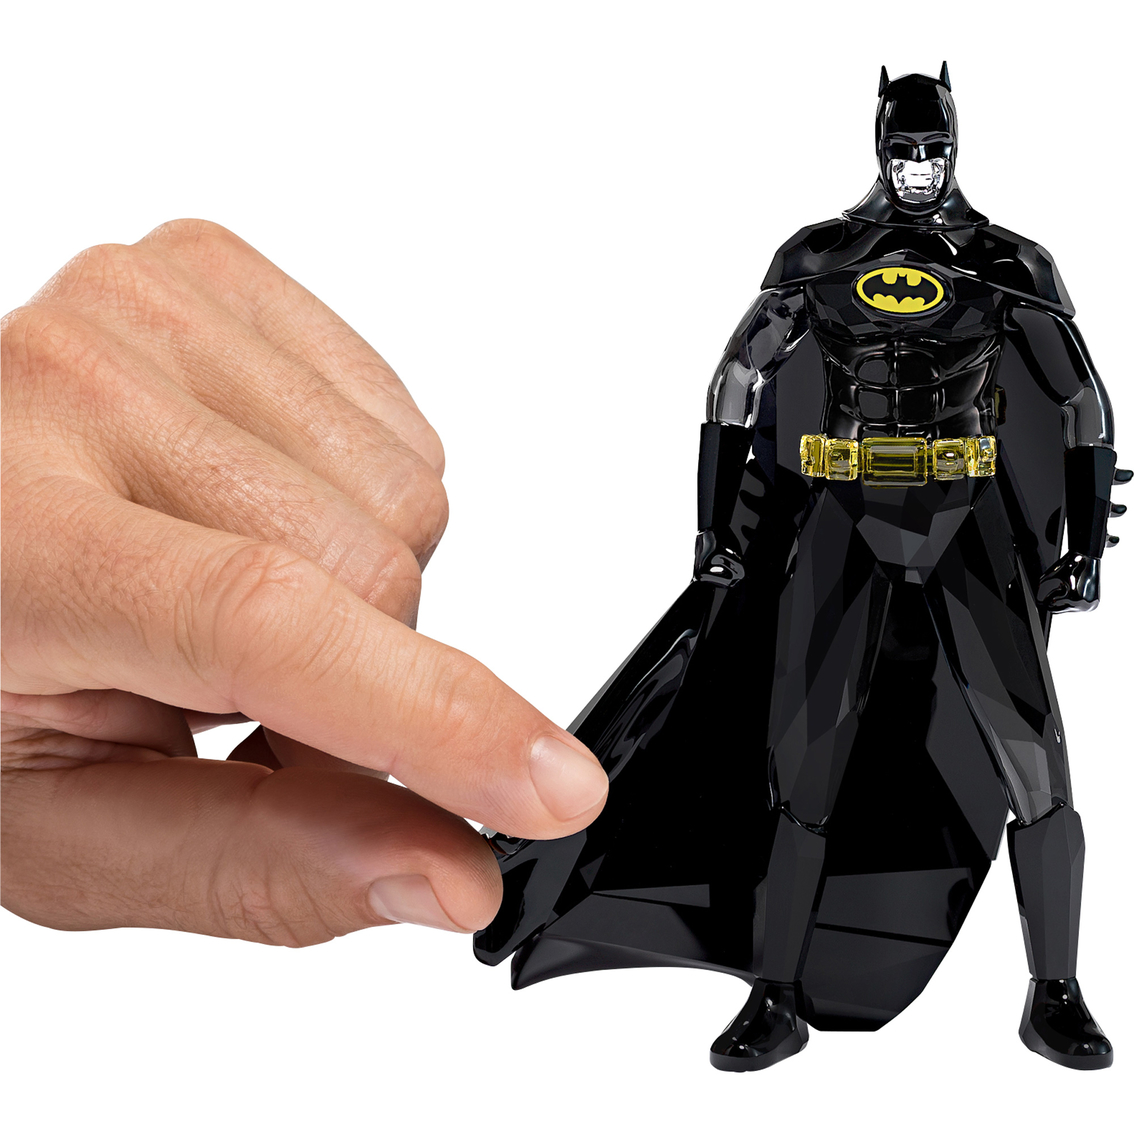 Swarovski Batman Figurine - Image 2 of 2